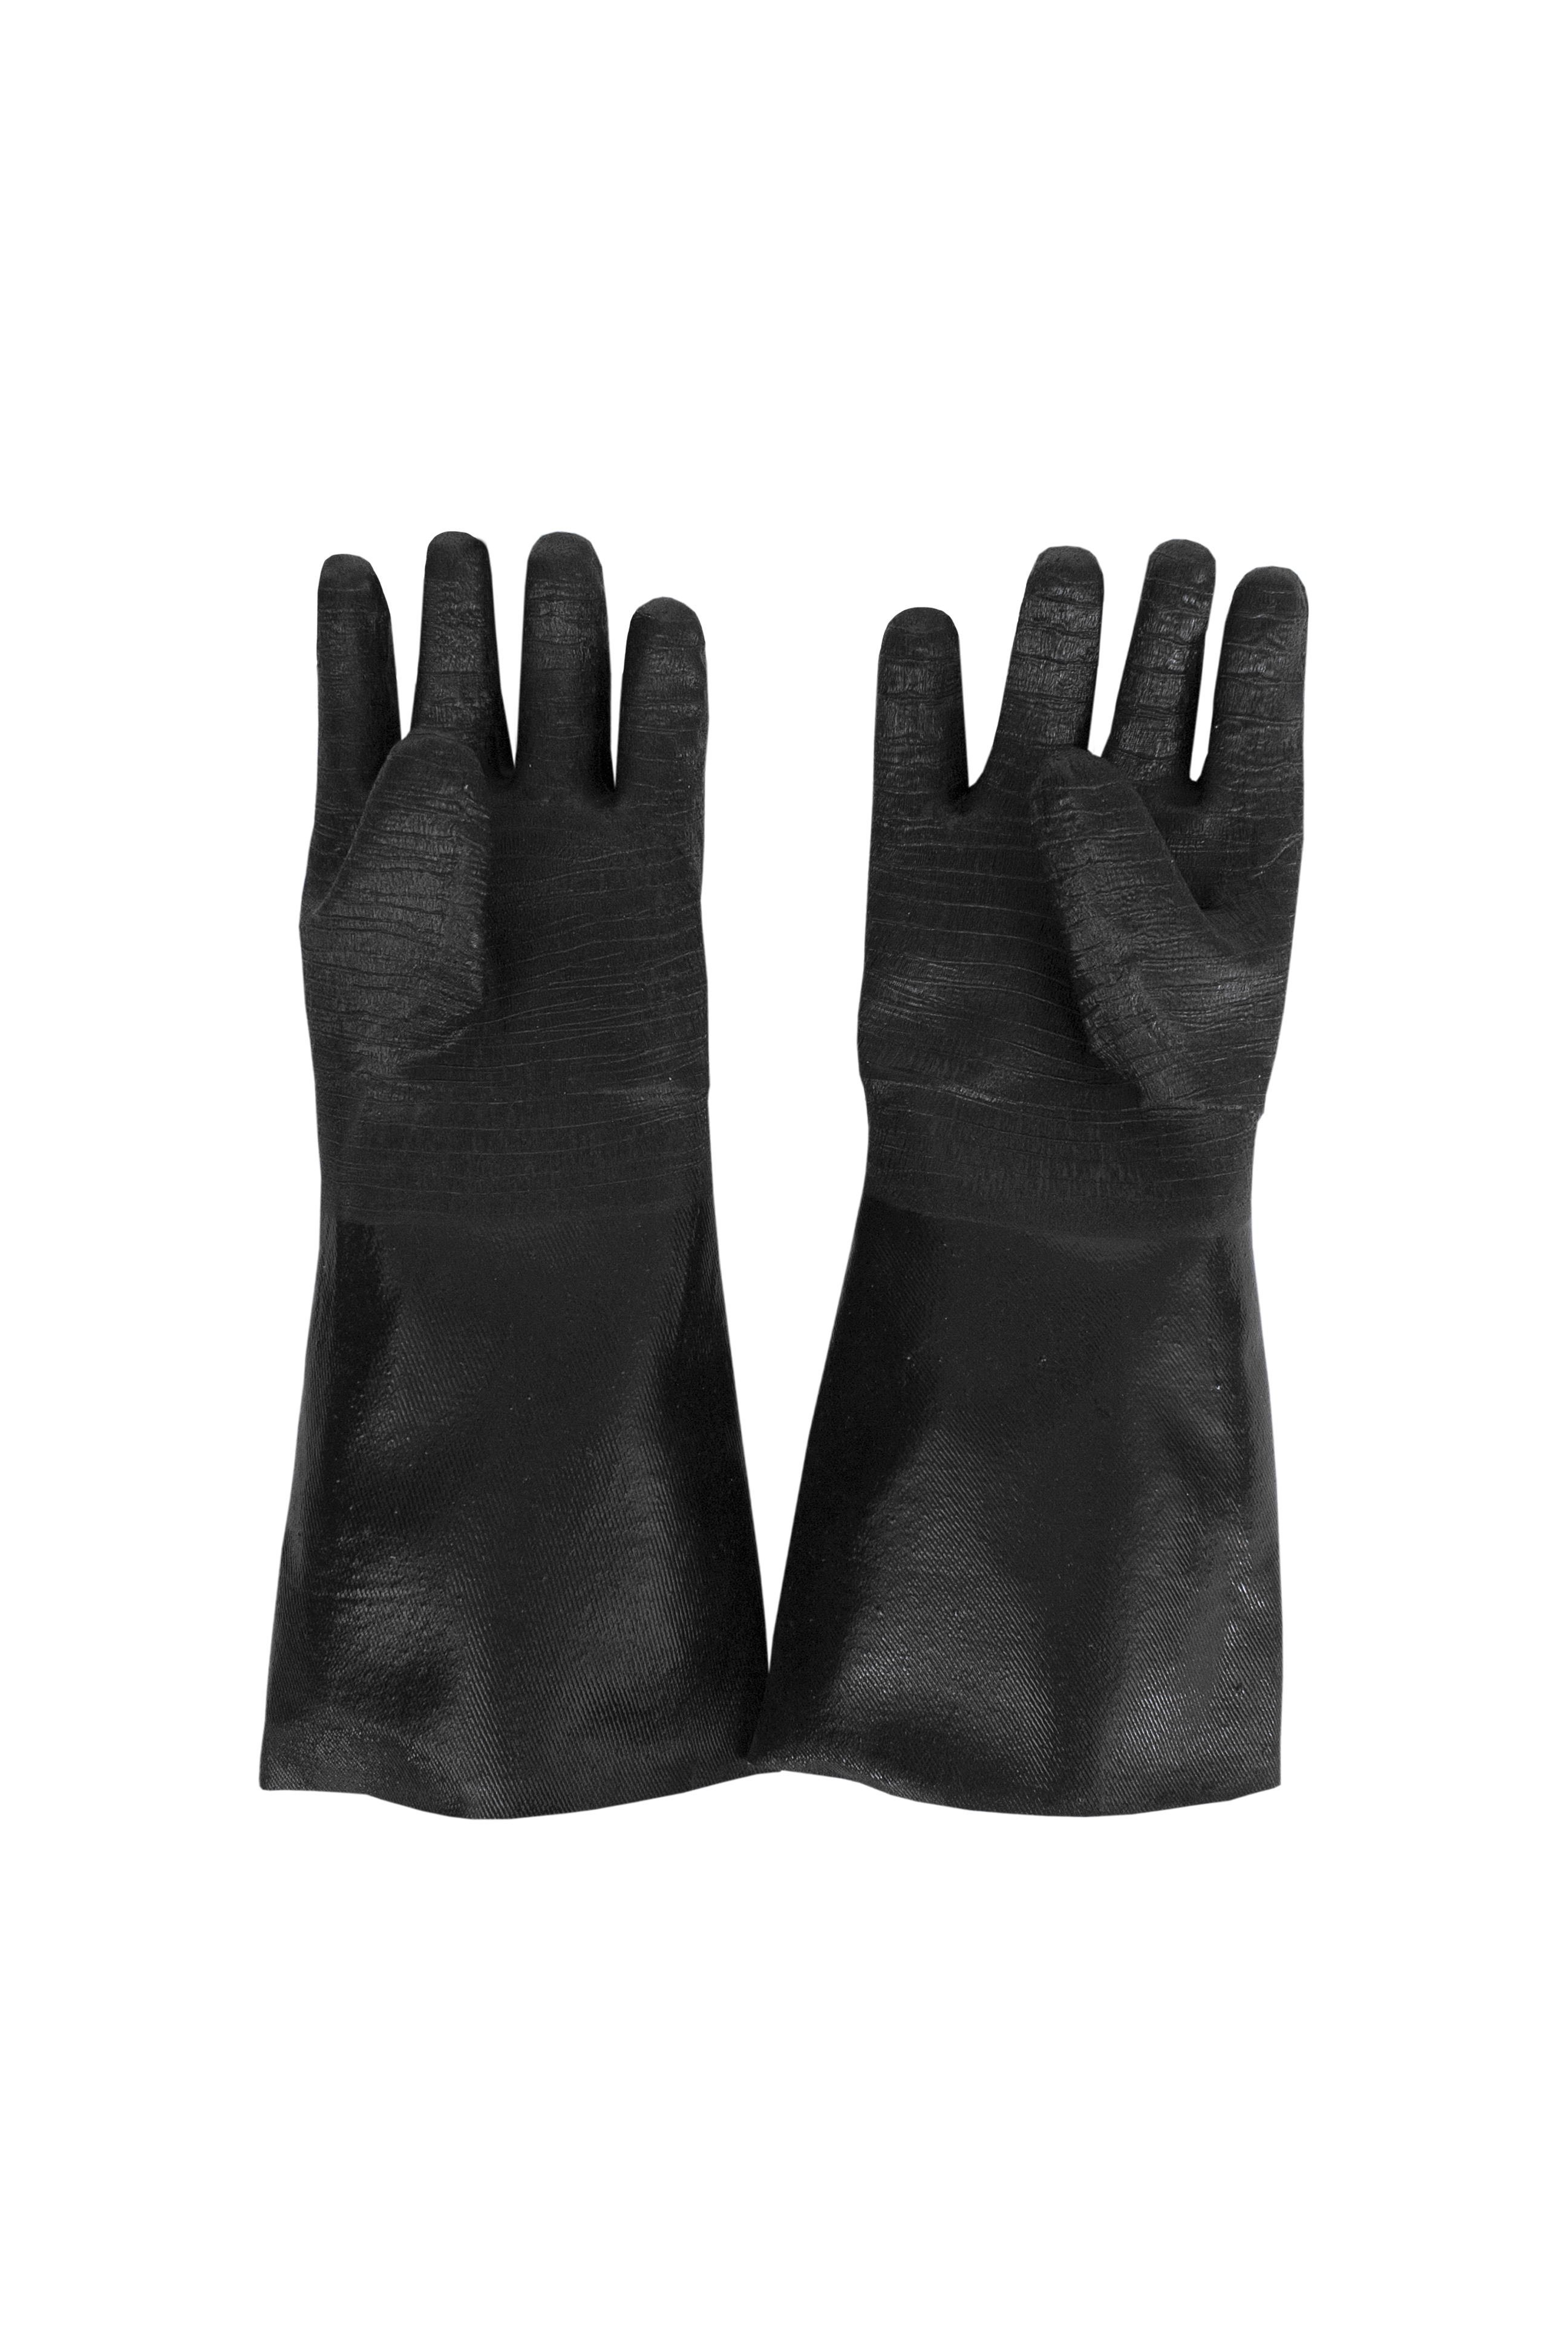 Neoprene Cleaning Gloves, 17